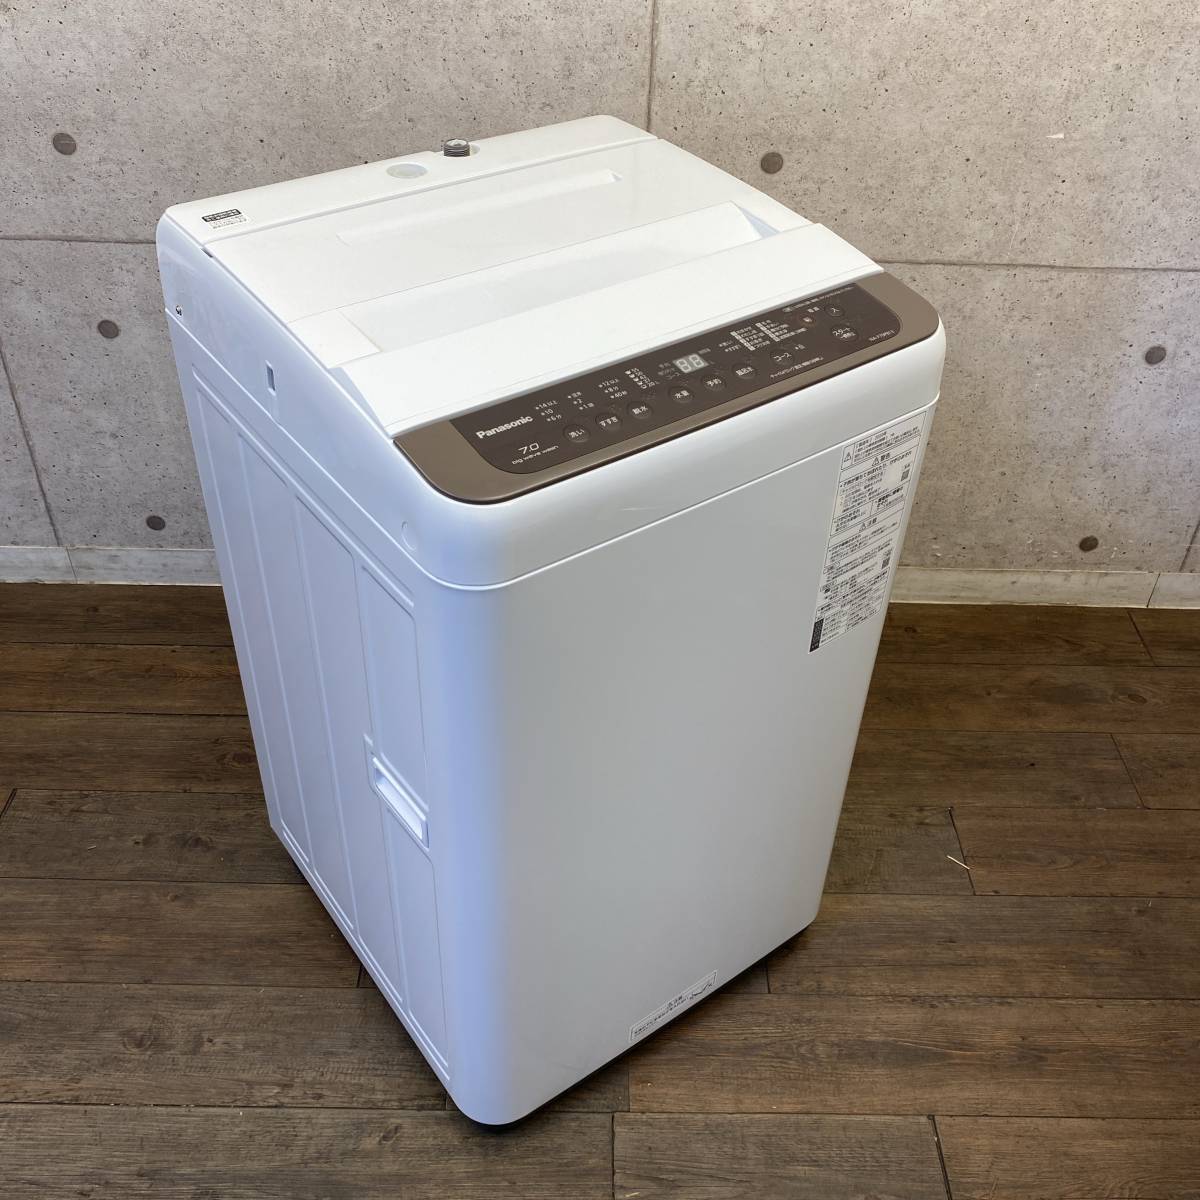 6720円 印象のデザイン S-04 パナソニック 7.0㎏洗濯機 NA-F70PB7 2014年製